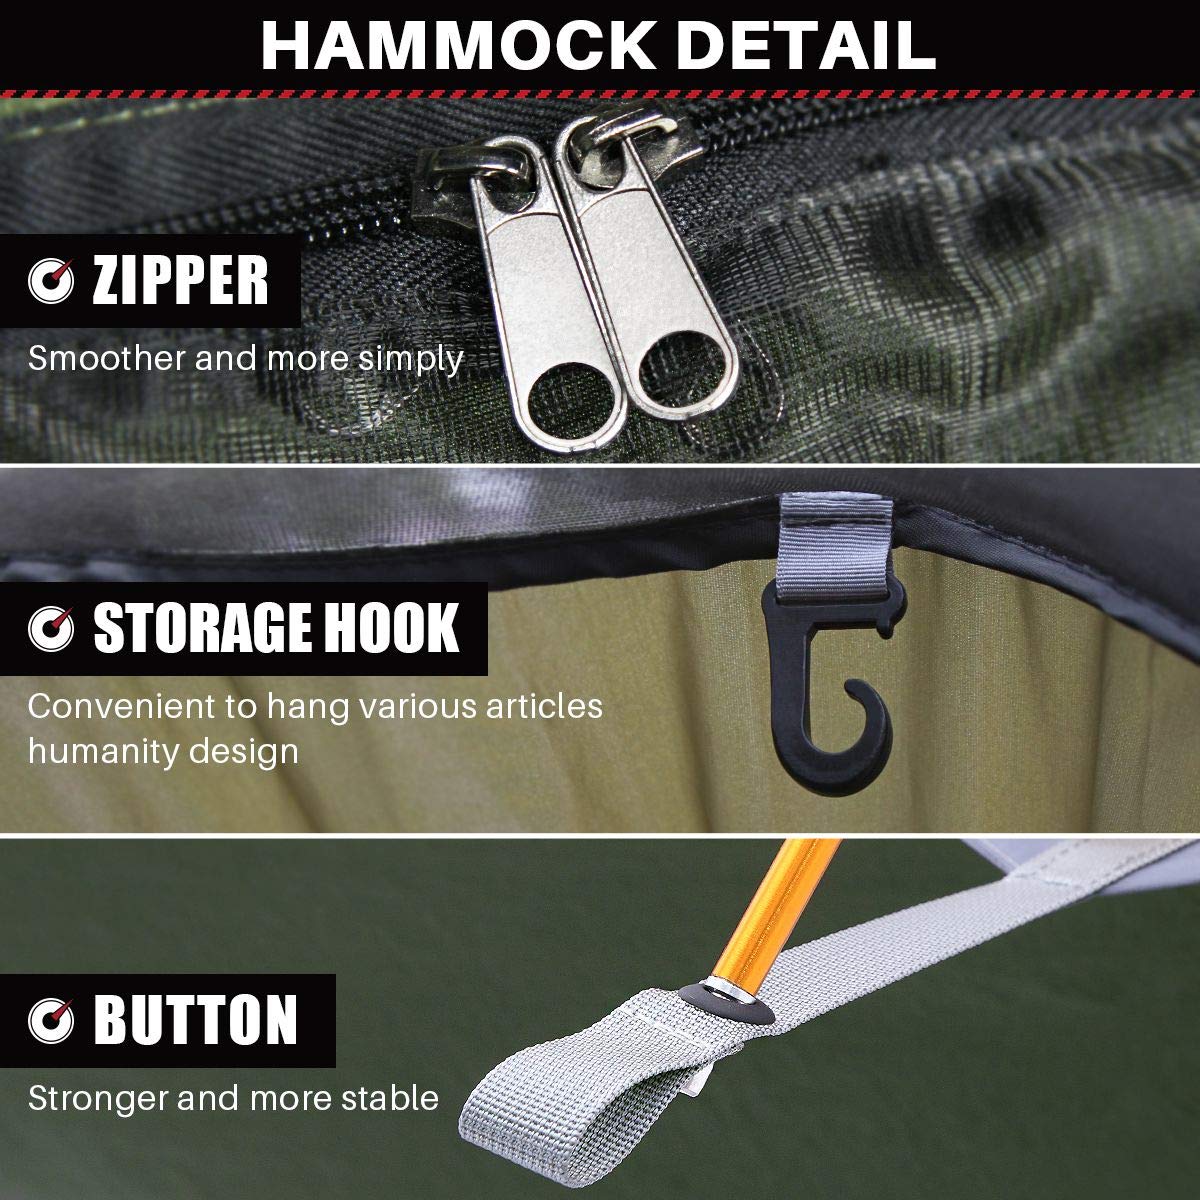 Upgrade Camping Hammock - ETROL